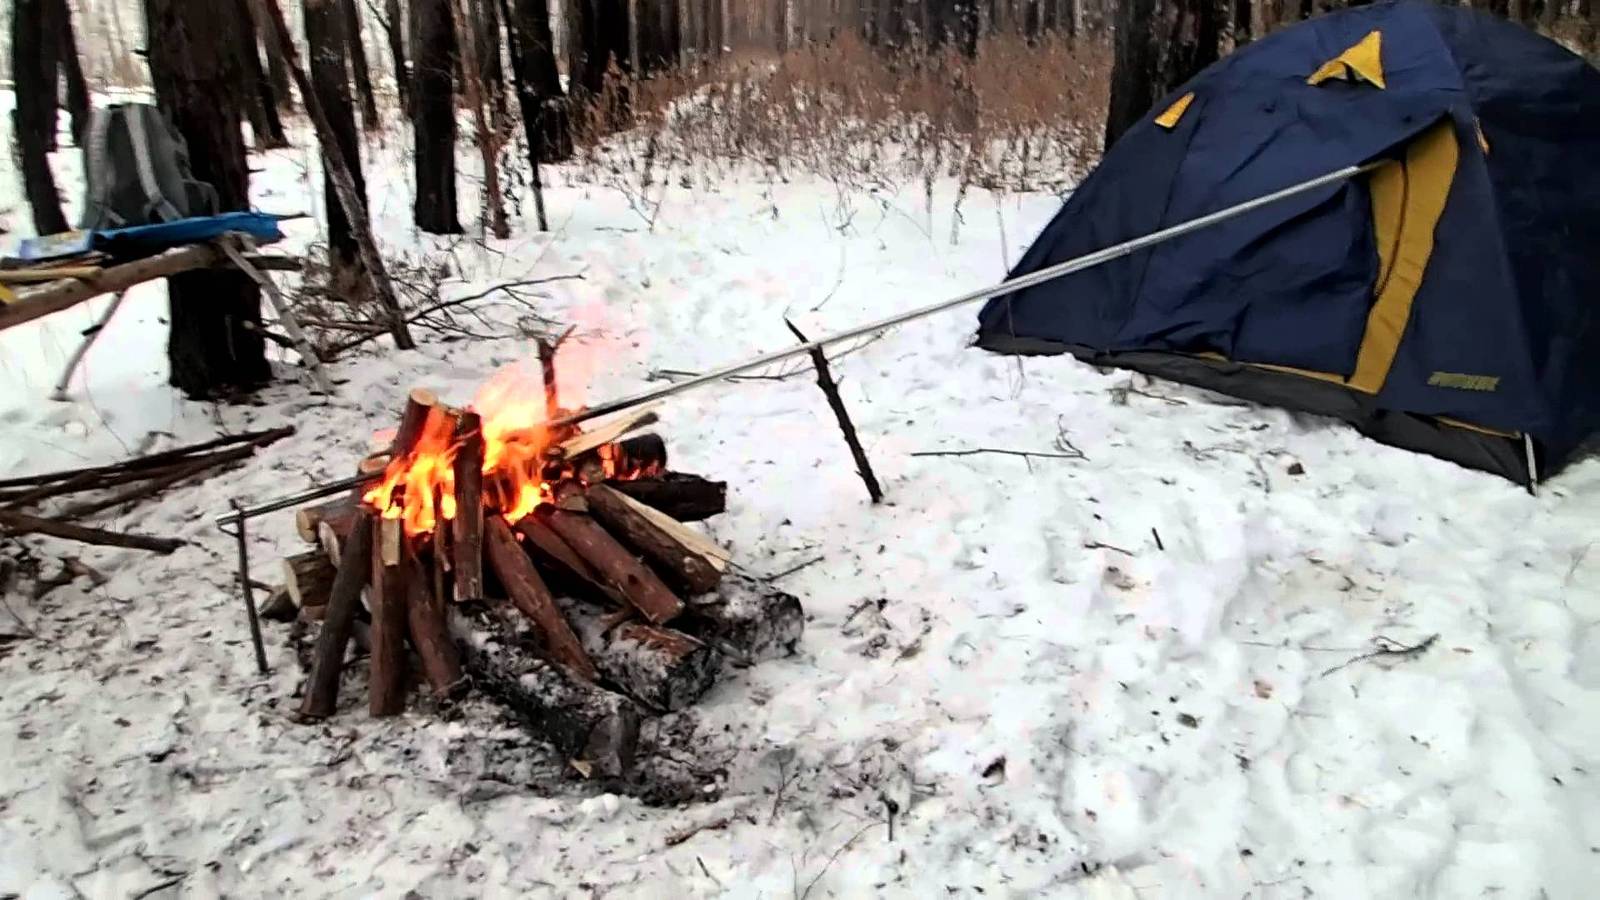 Как сделать обогрев палатки зимой своими руками